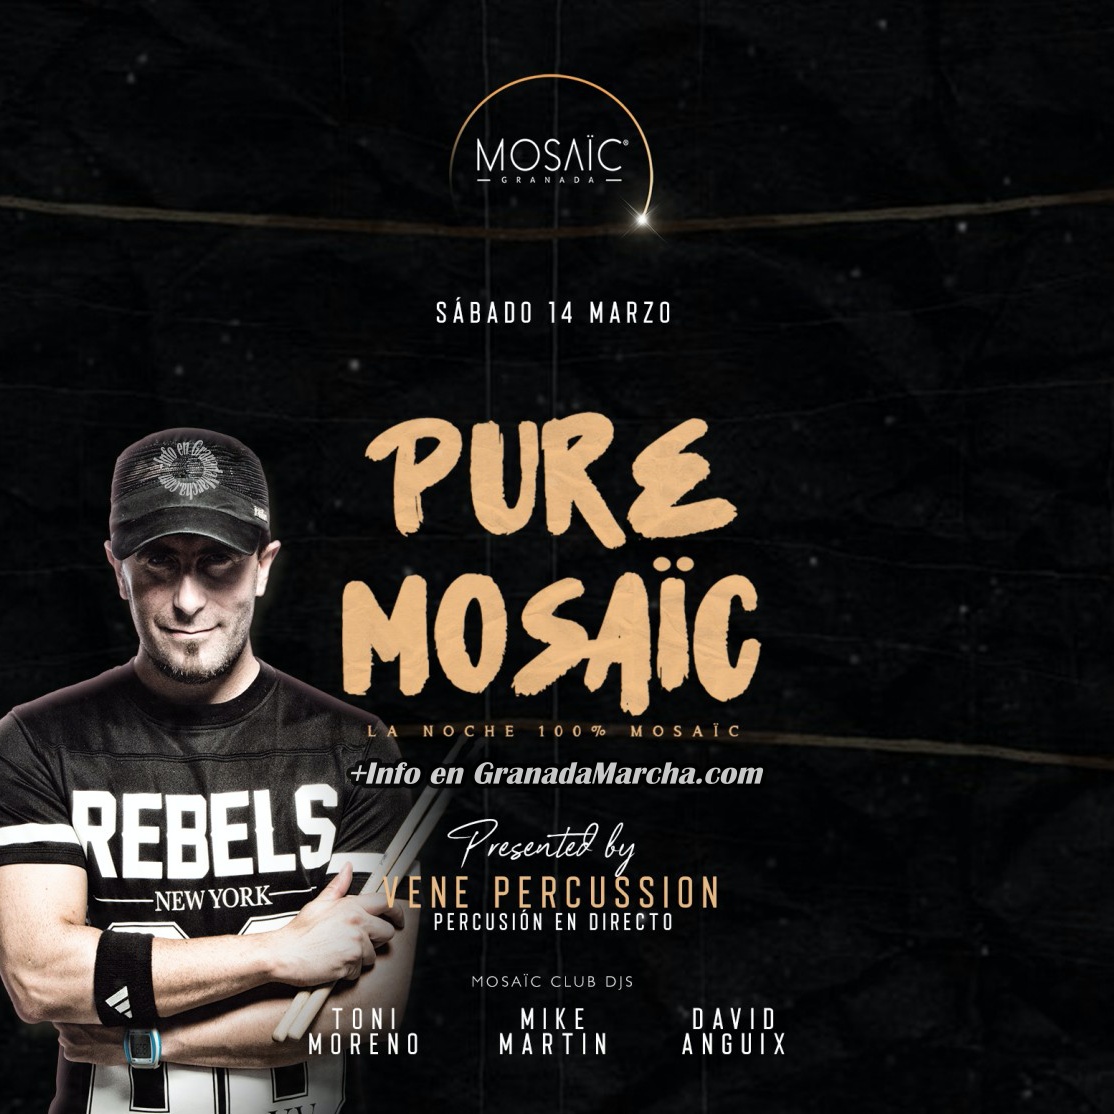 Pure Mosaïc con Vene Percusión - Sábado 14/03/20